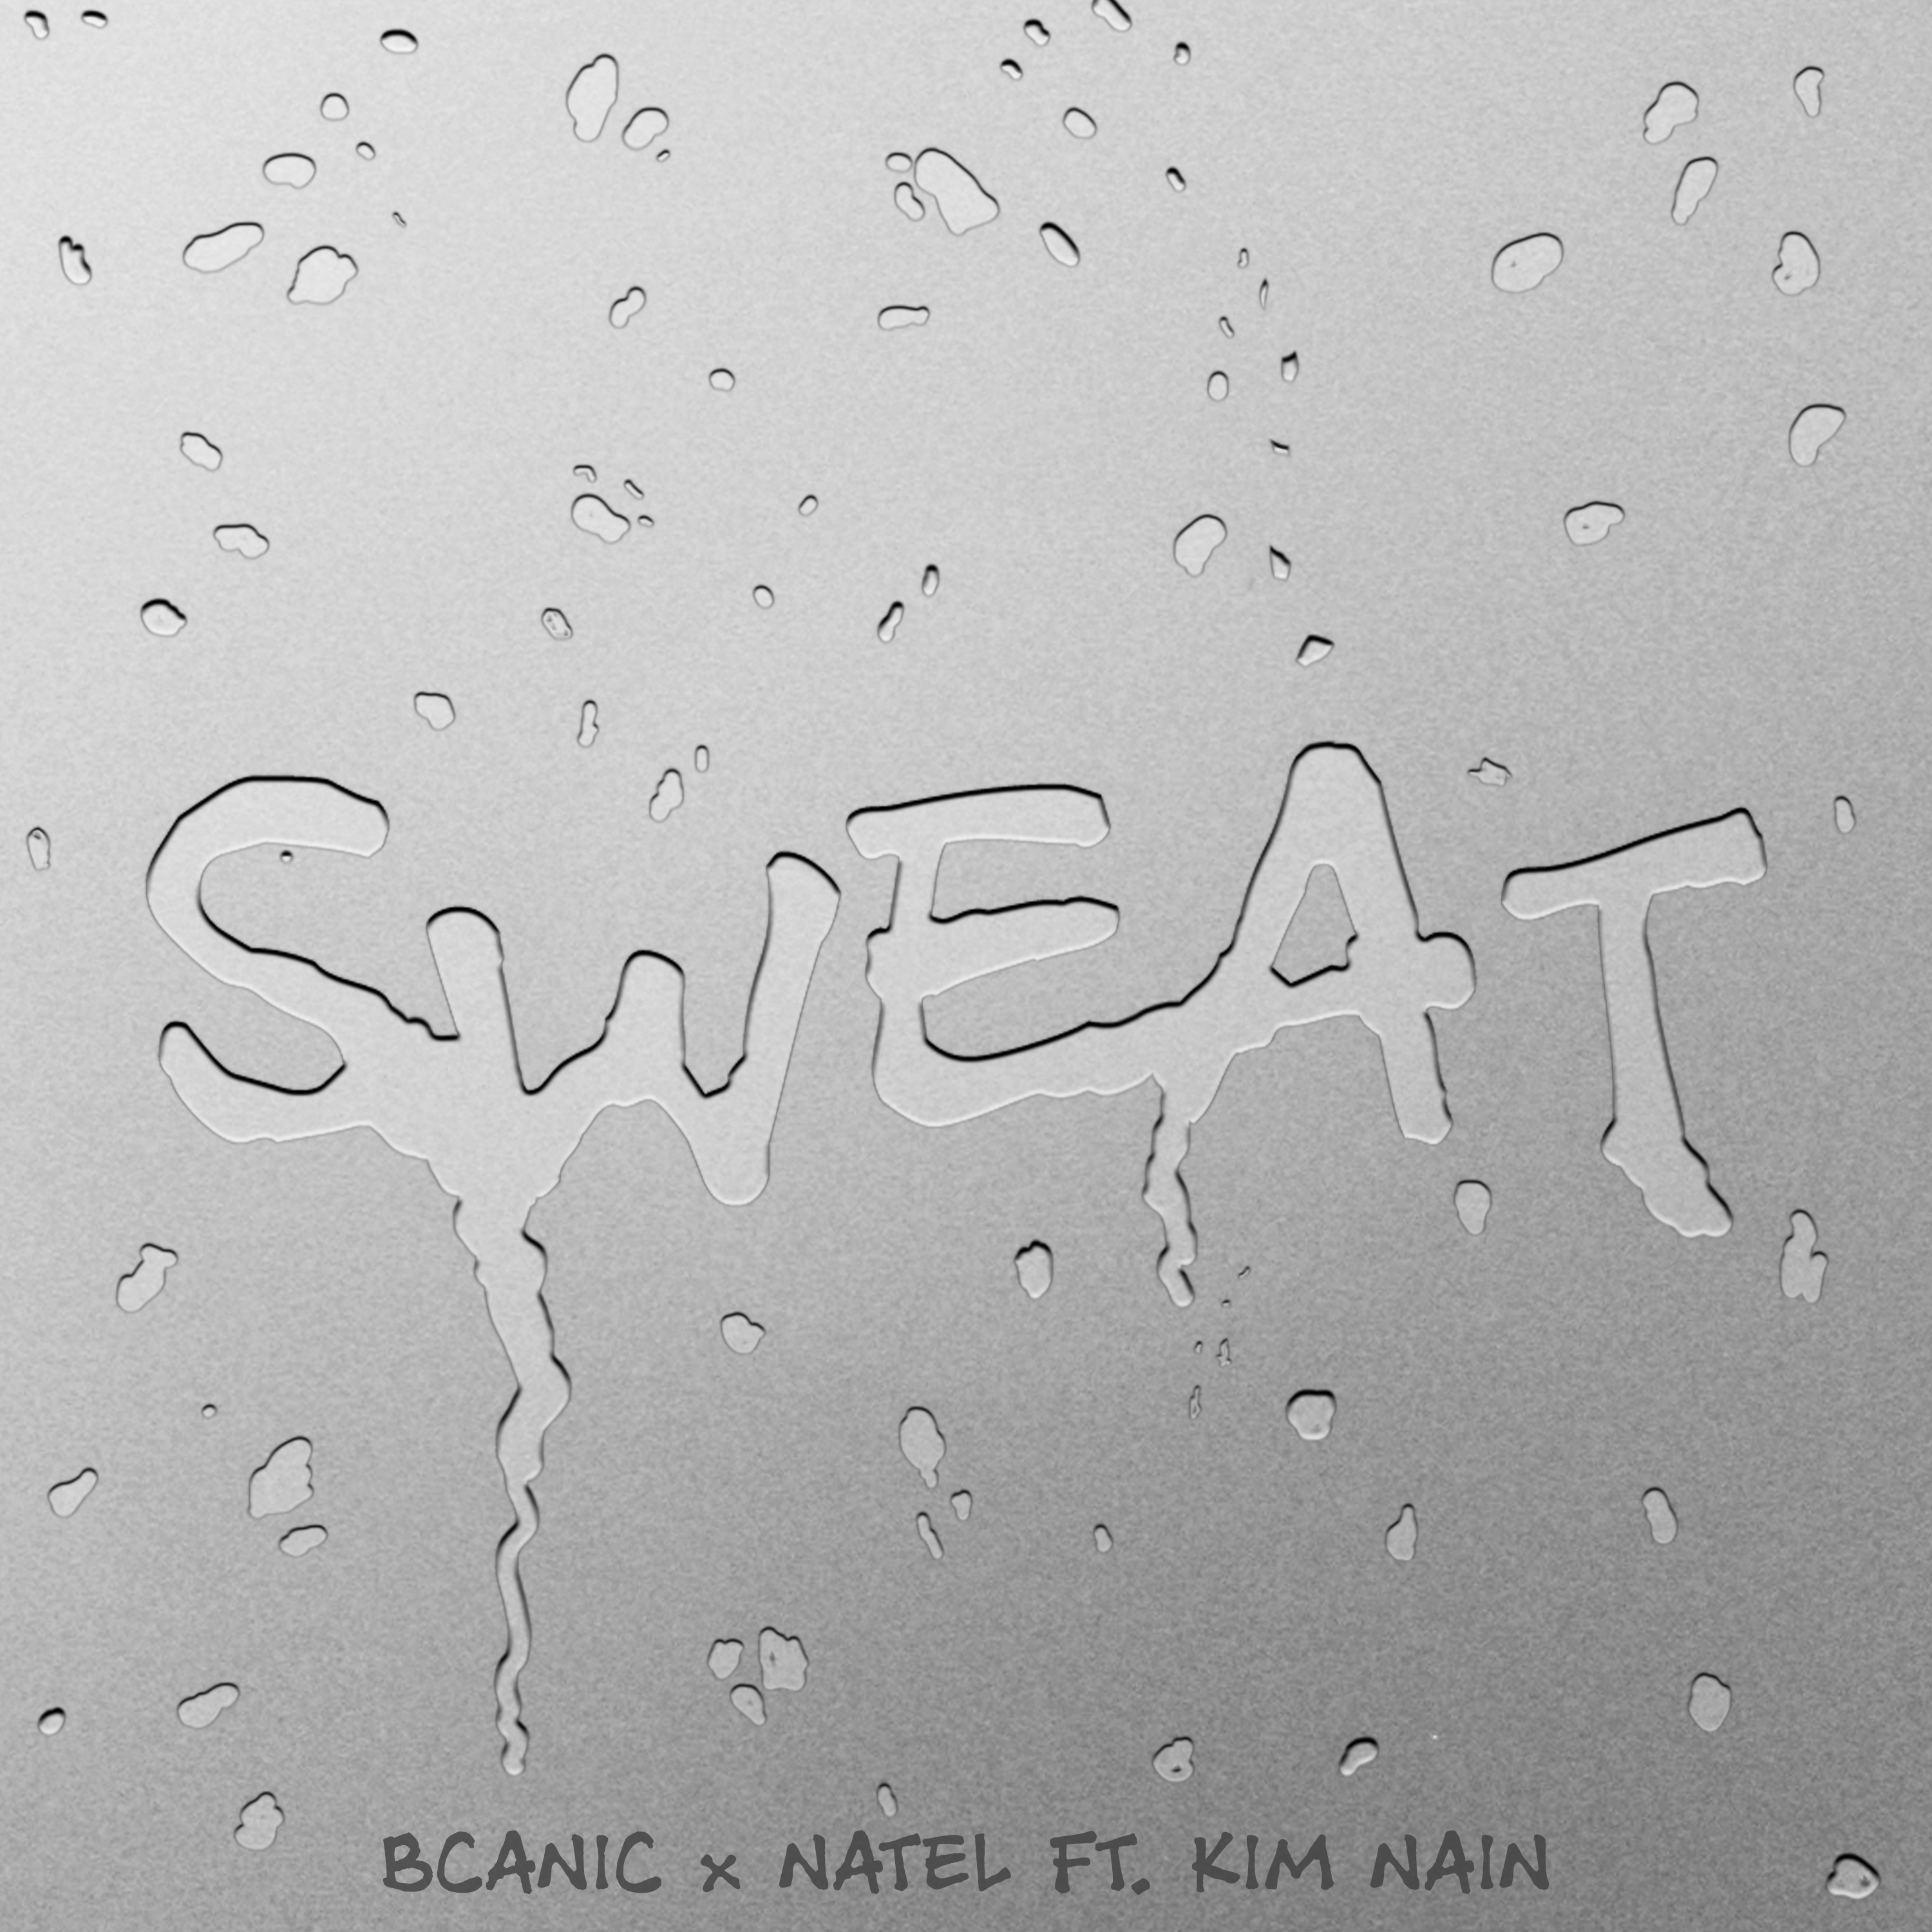 Sweat (Feat. Kim Nain)